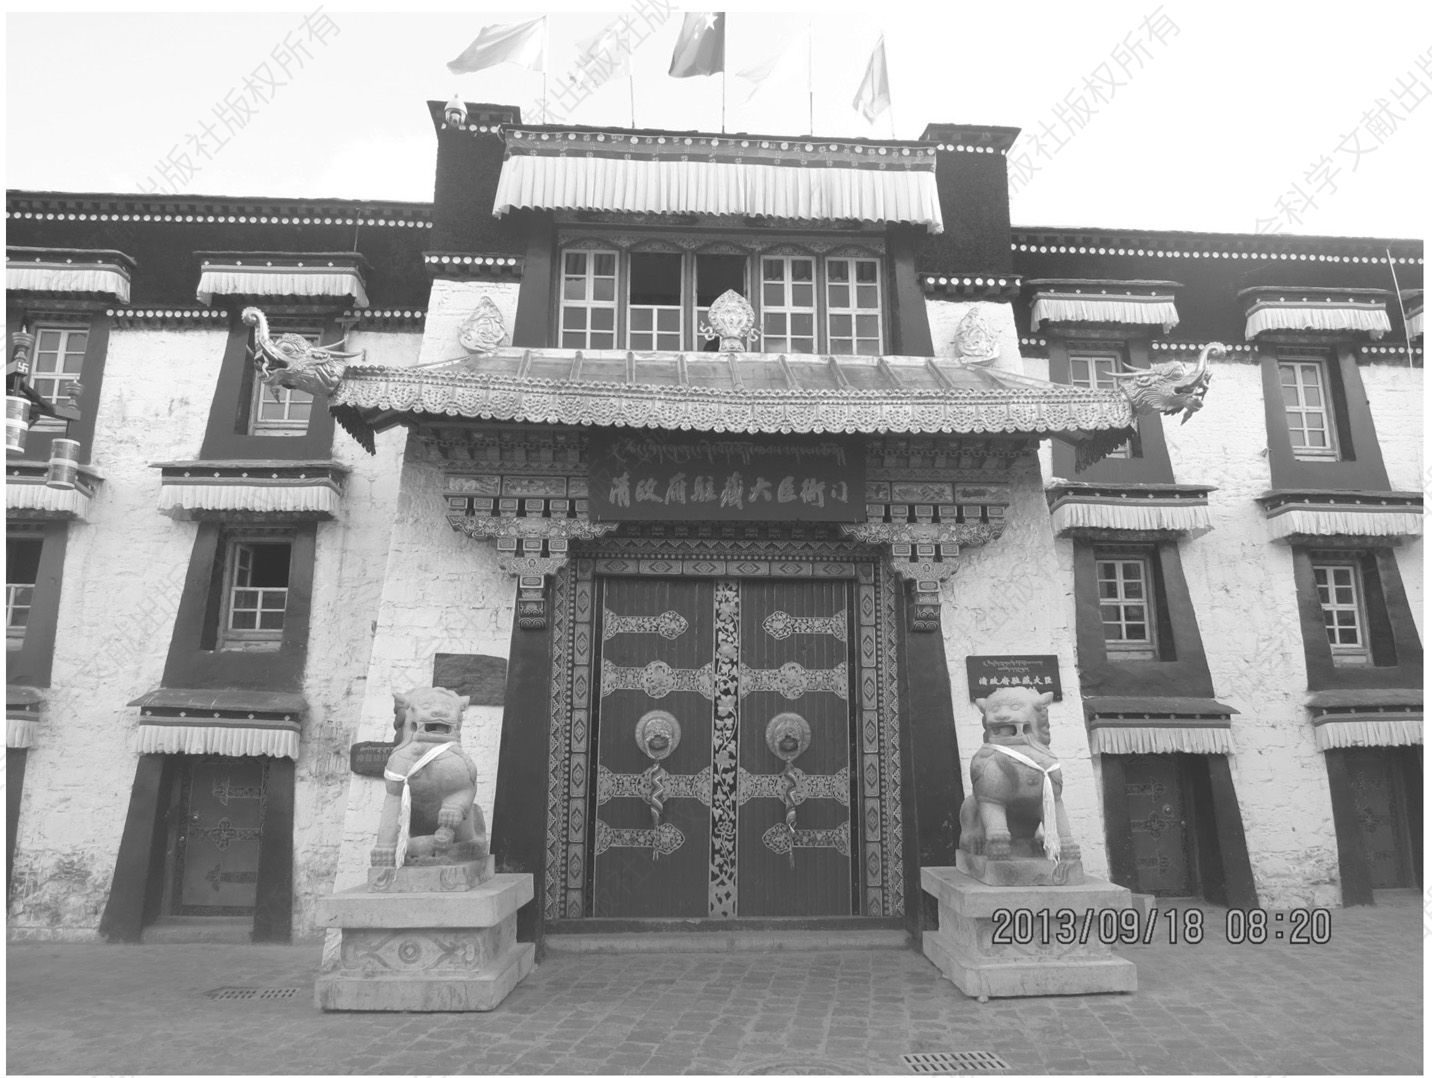 2013年修缮后的驻藏大臣衙门